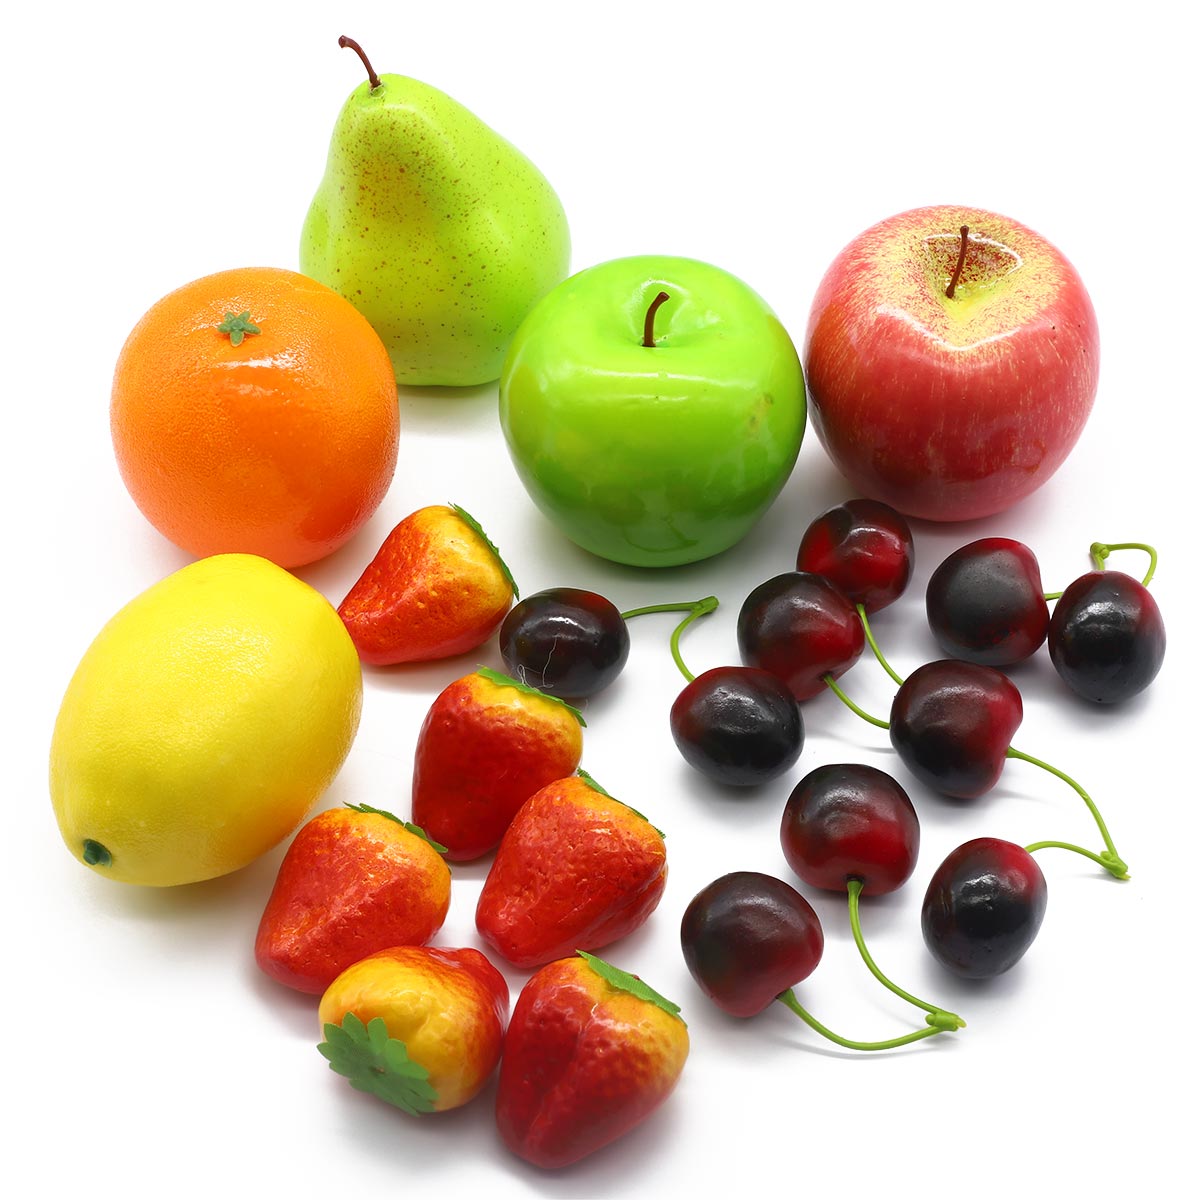 Муляжи фруктов для детей